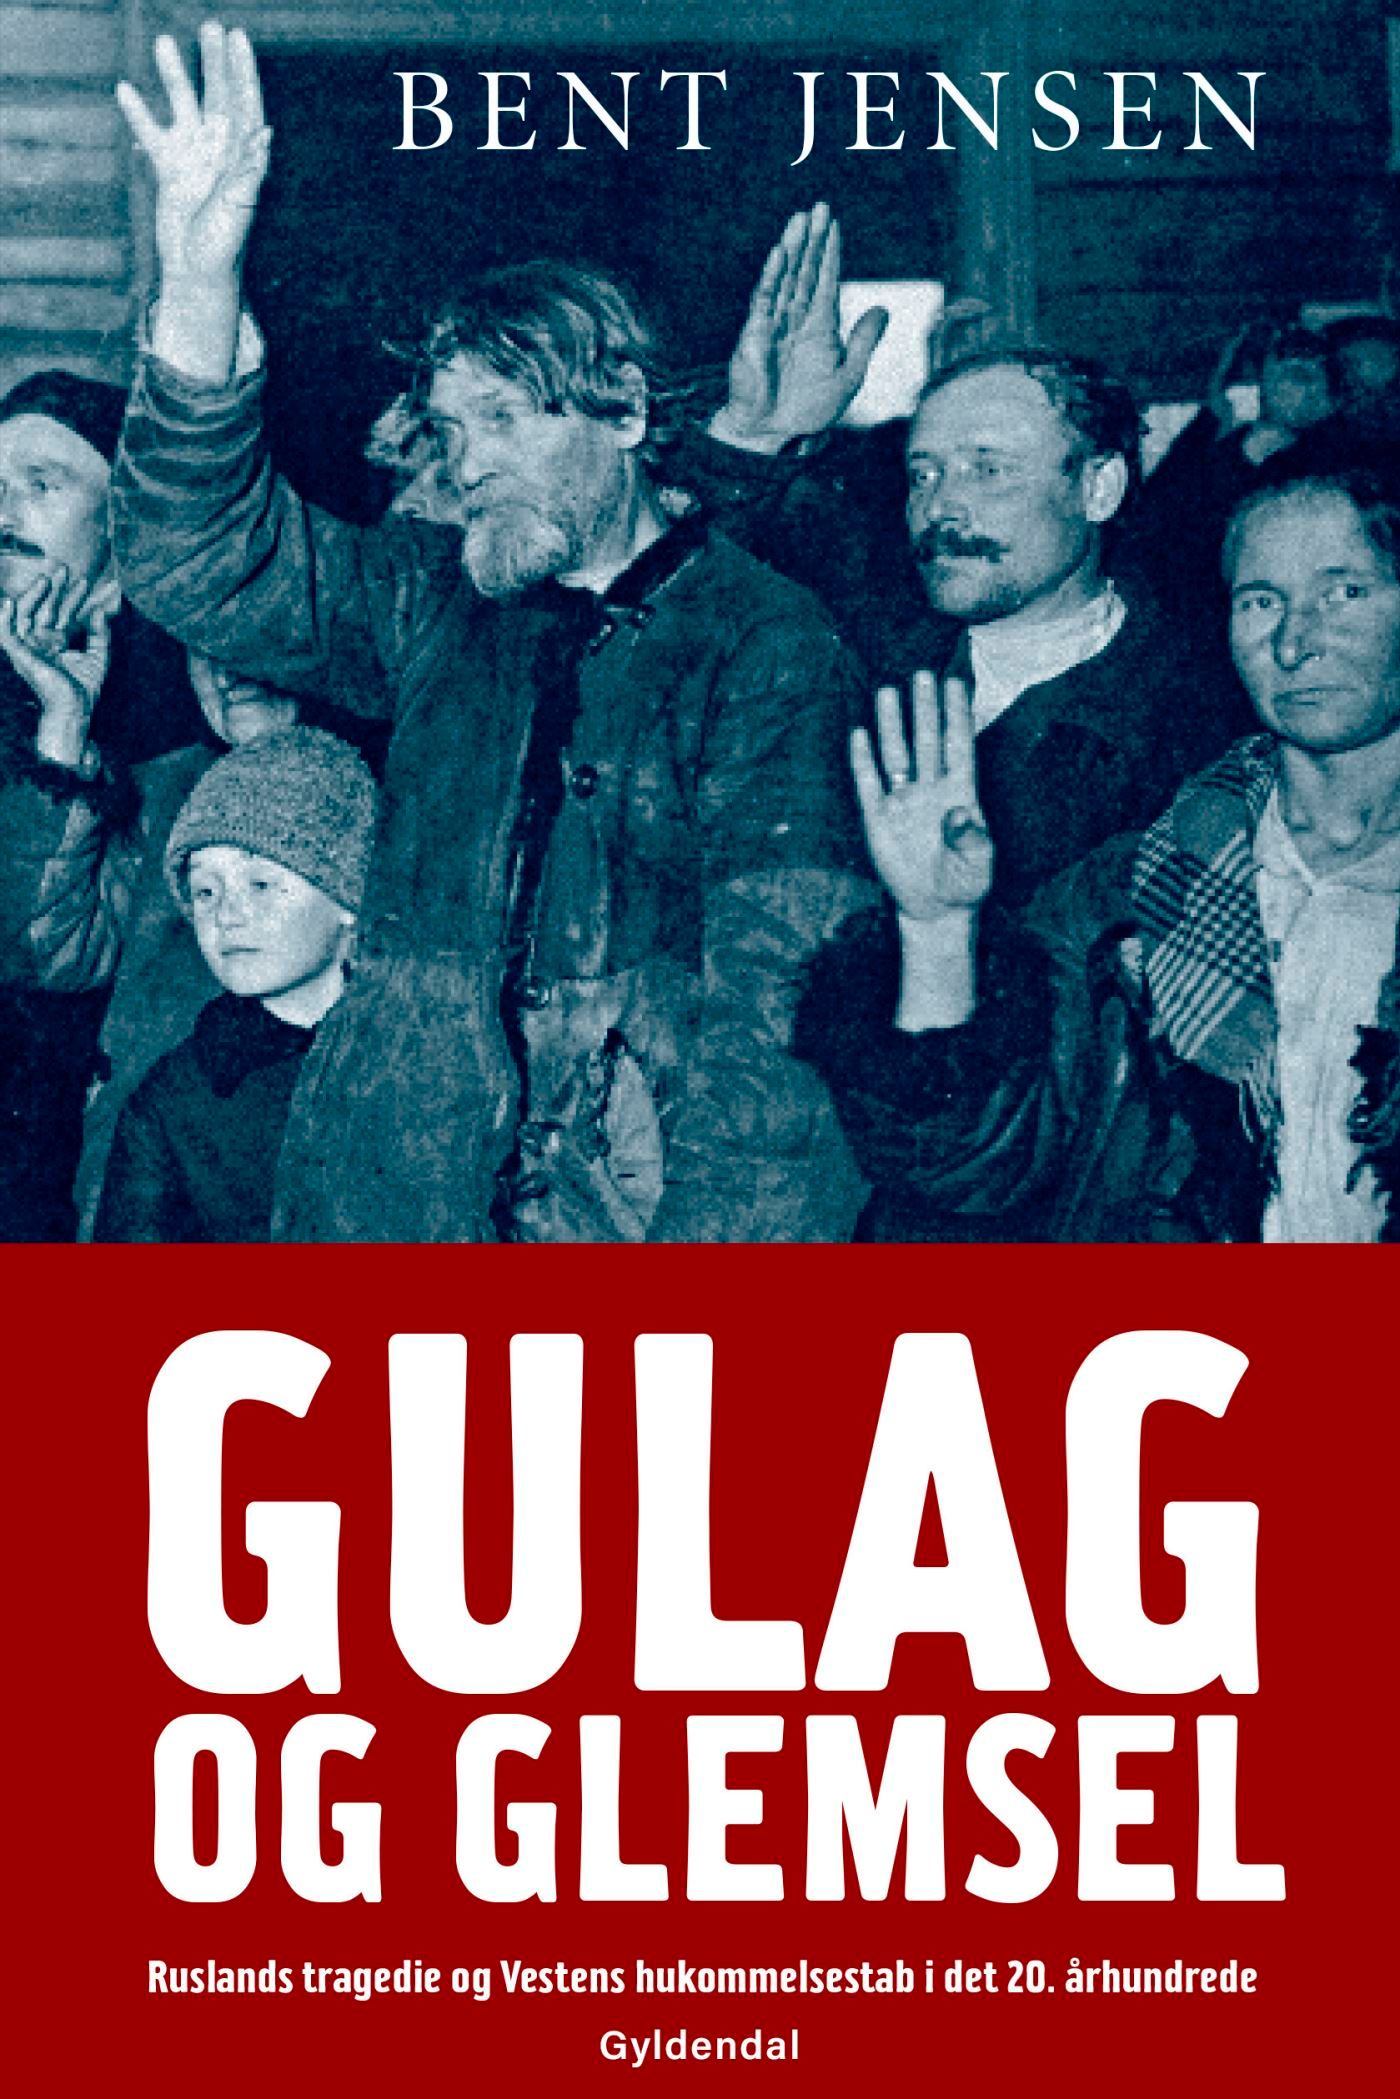 Gulag og glemsel, e-bog af Bent Jensen